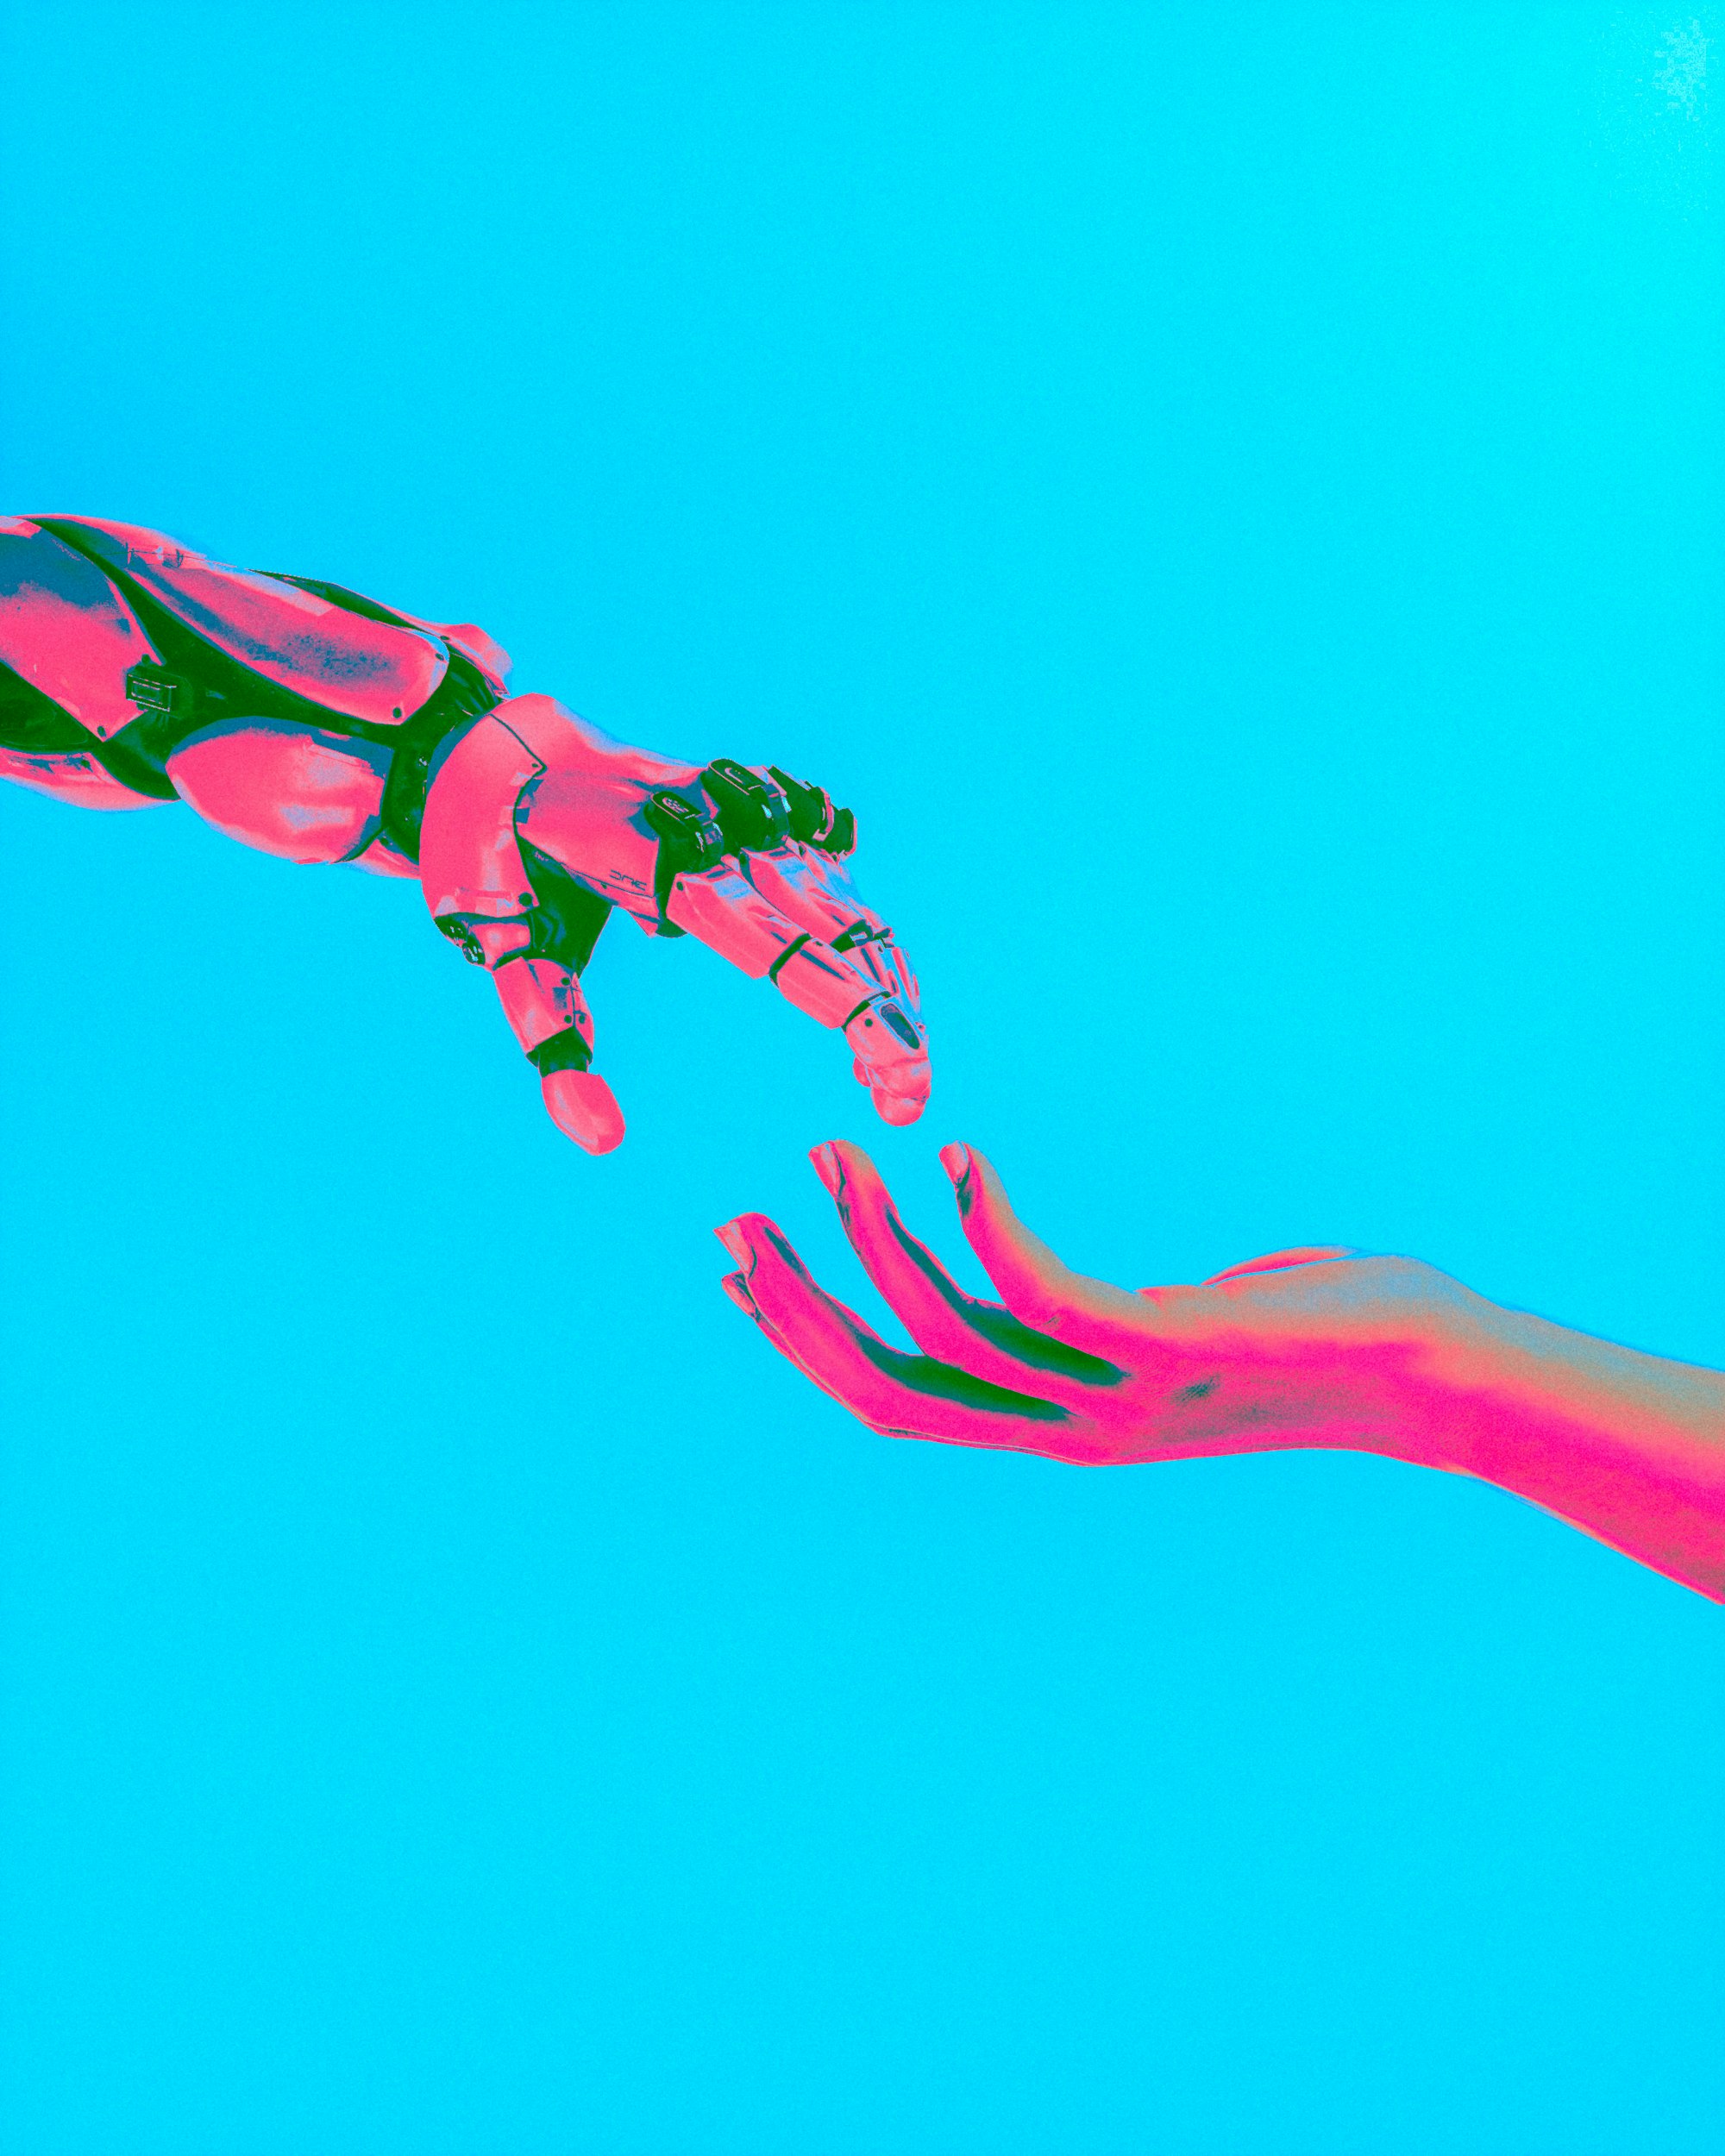 Roboter reicht Mensch die Hand, im Pop-Art Stil mit rosa und hellblauen Akzenten